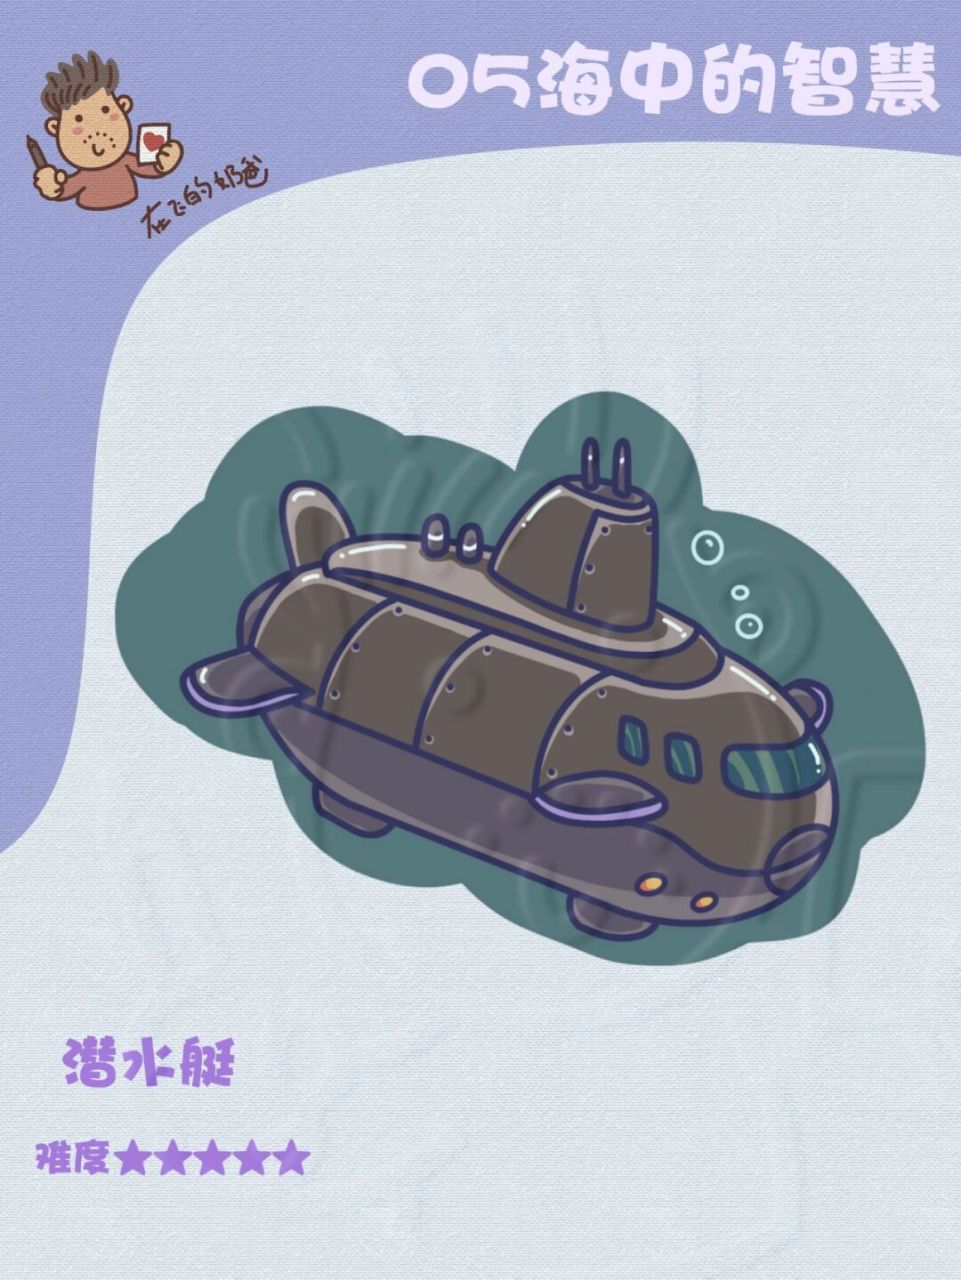 核潜艇简笔画图片